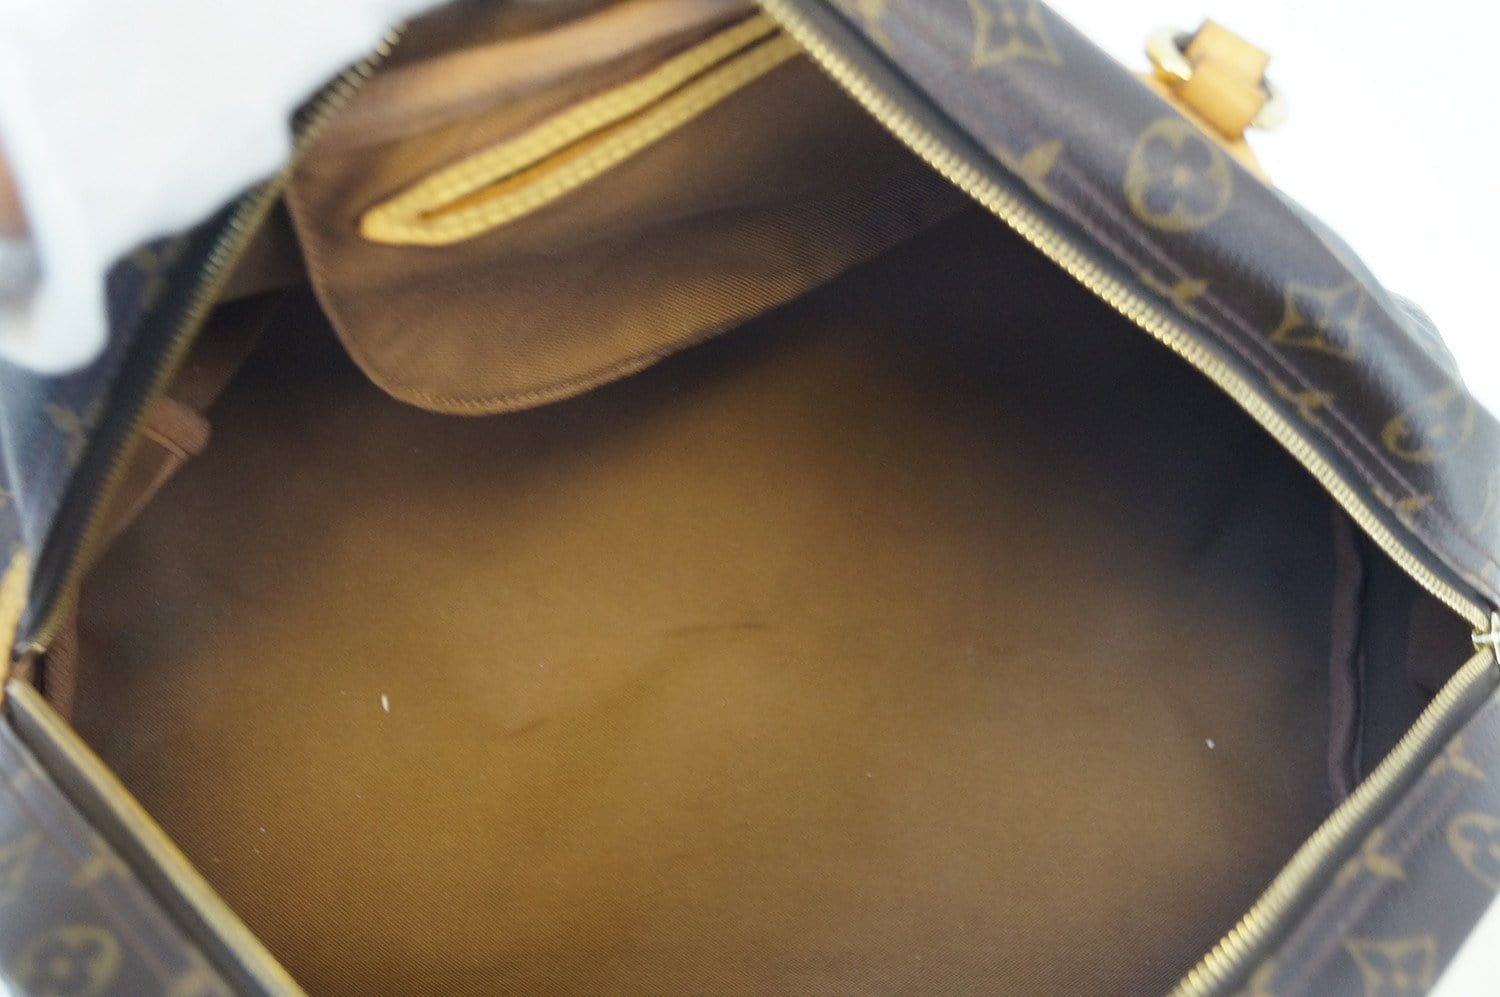 How the Louis Vuitton Montorgueil GM purse has aged 